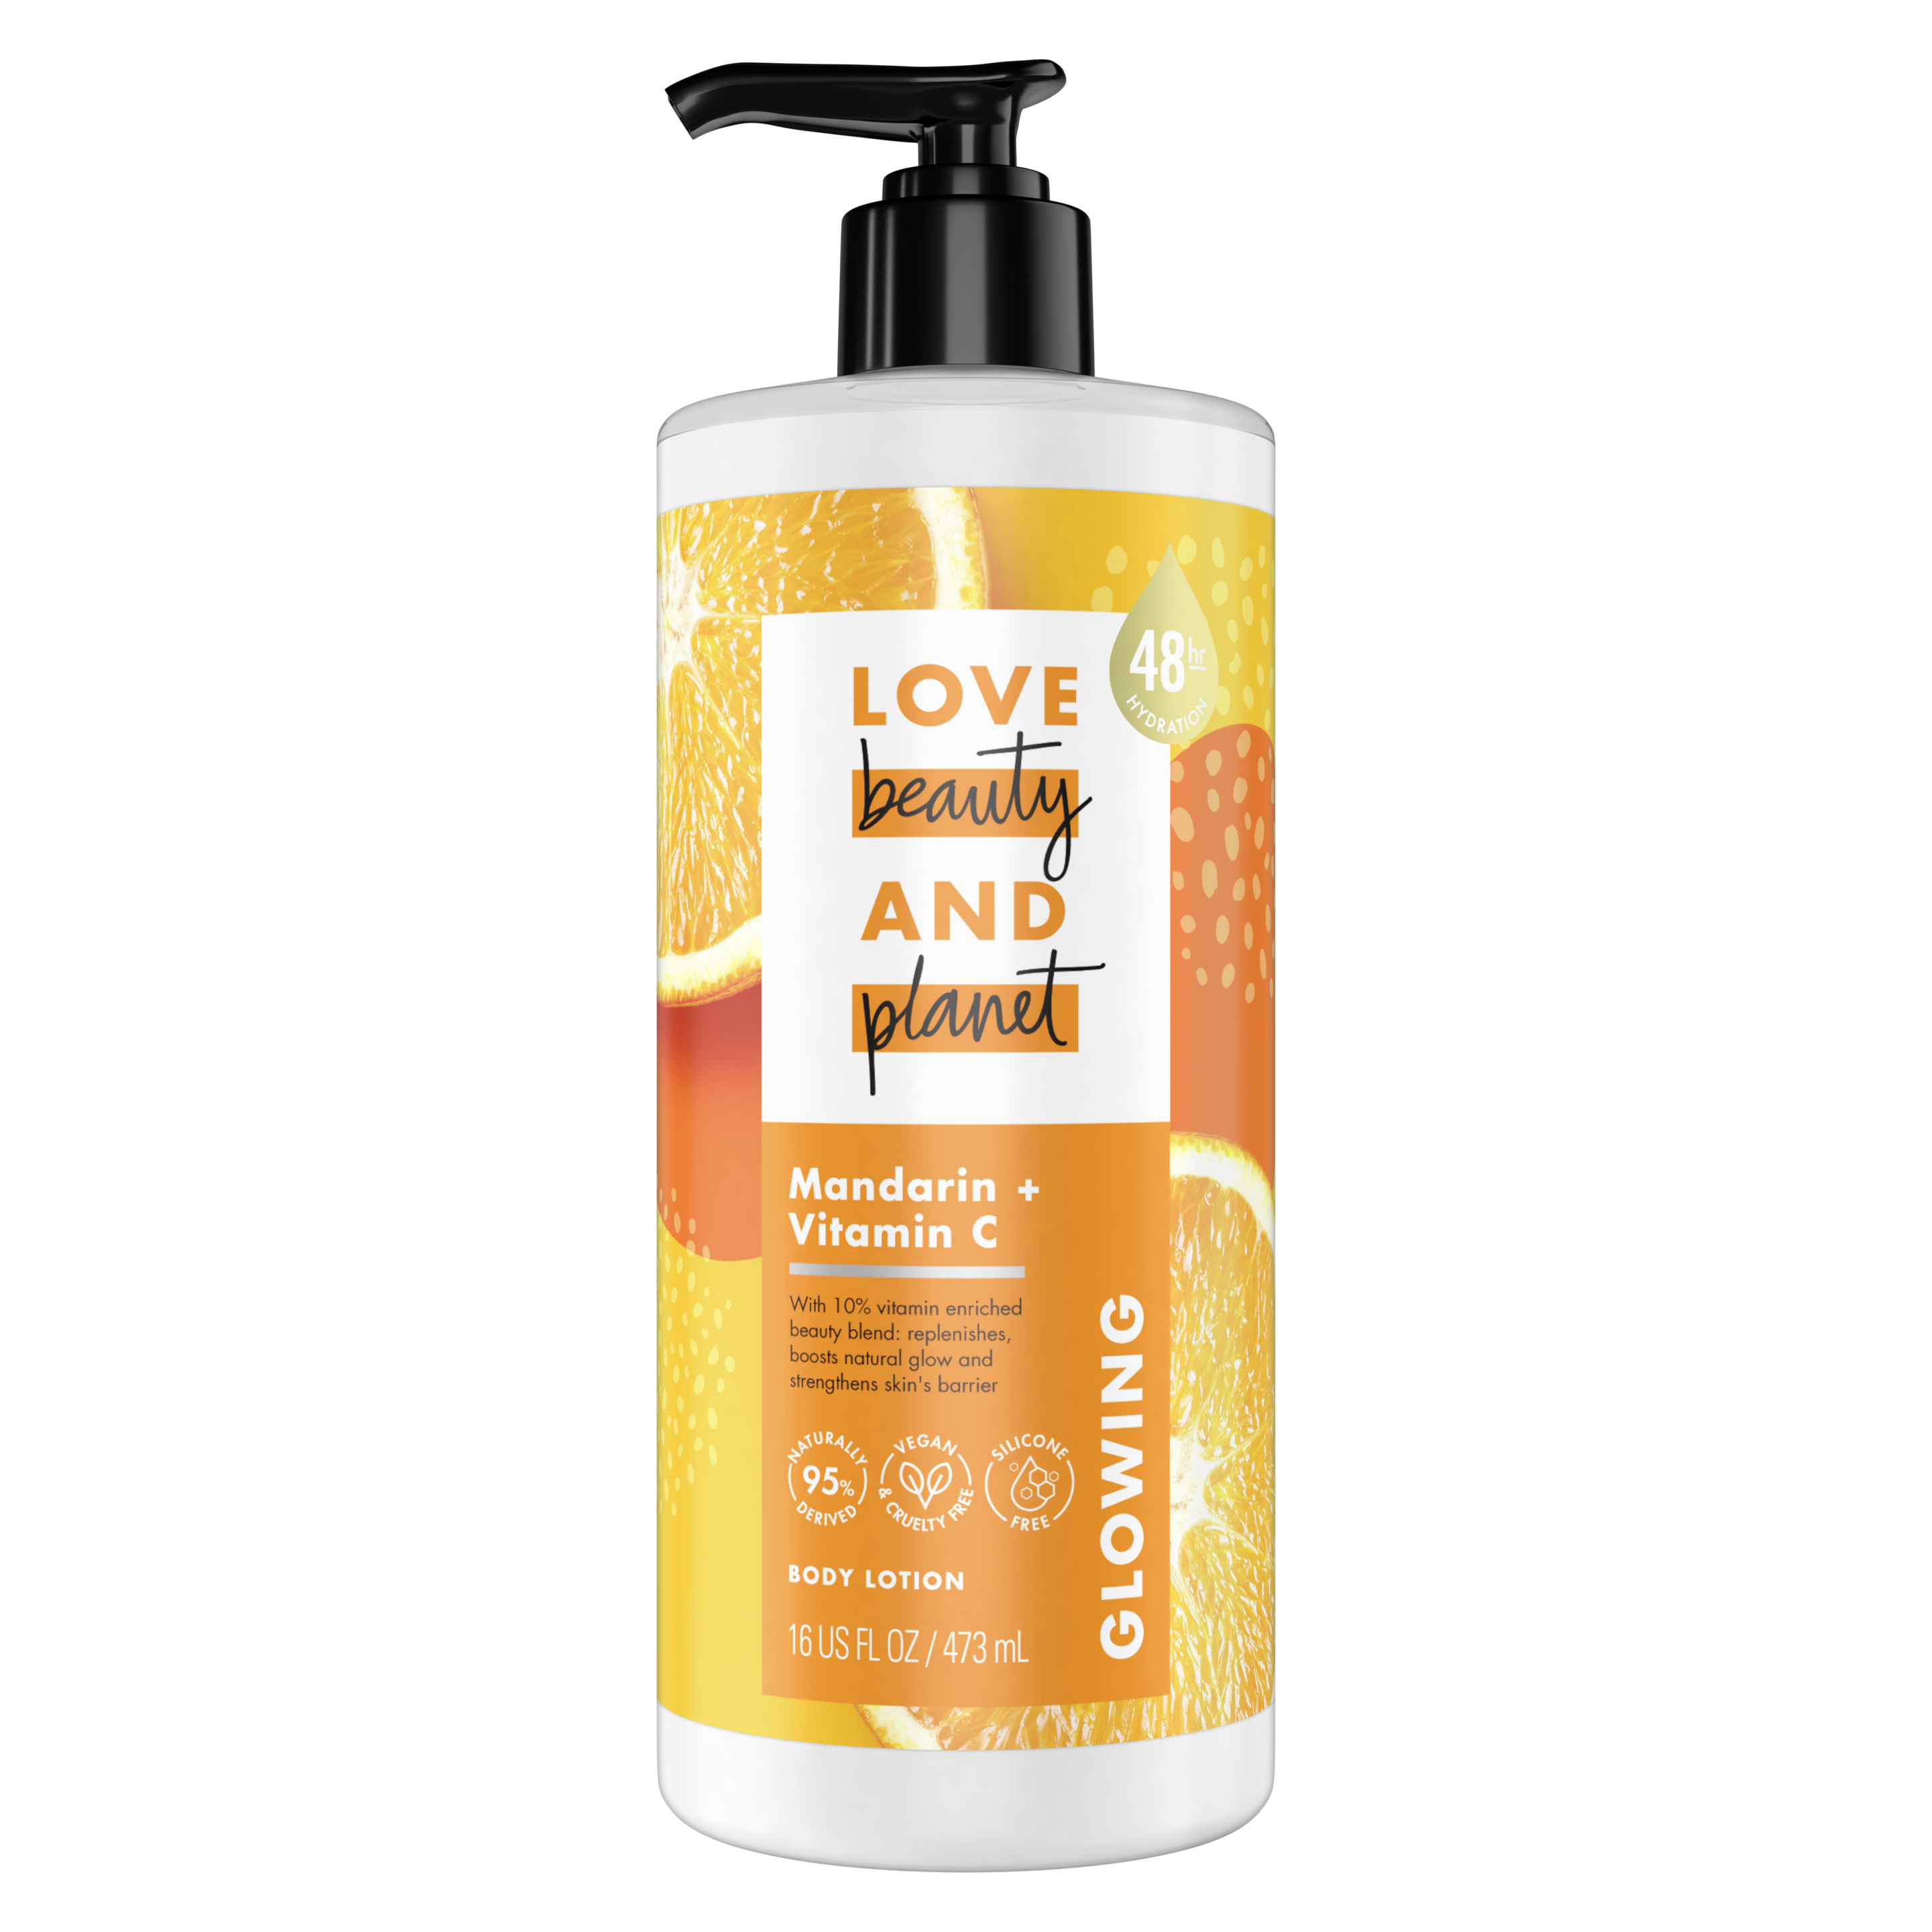 mandarin + vitamin C body lotion